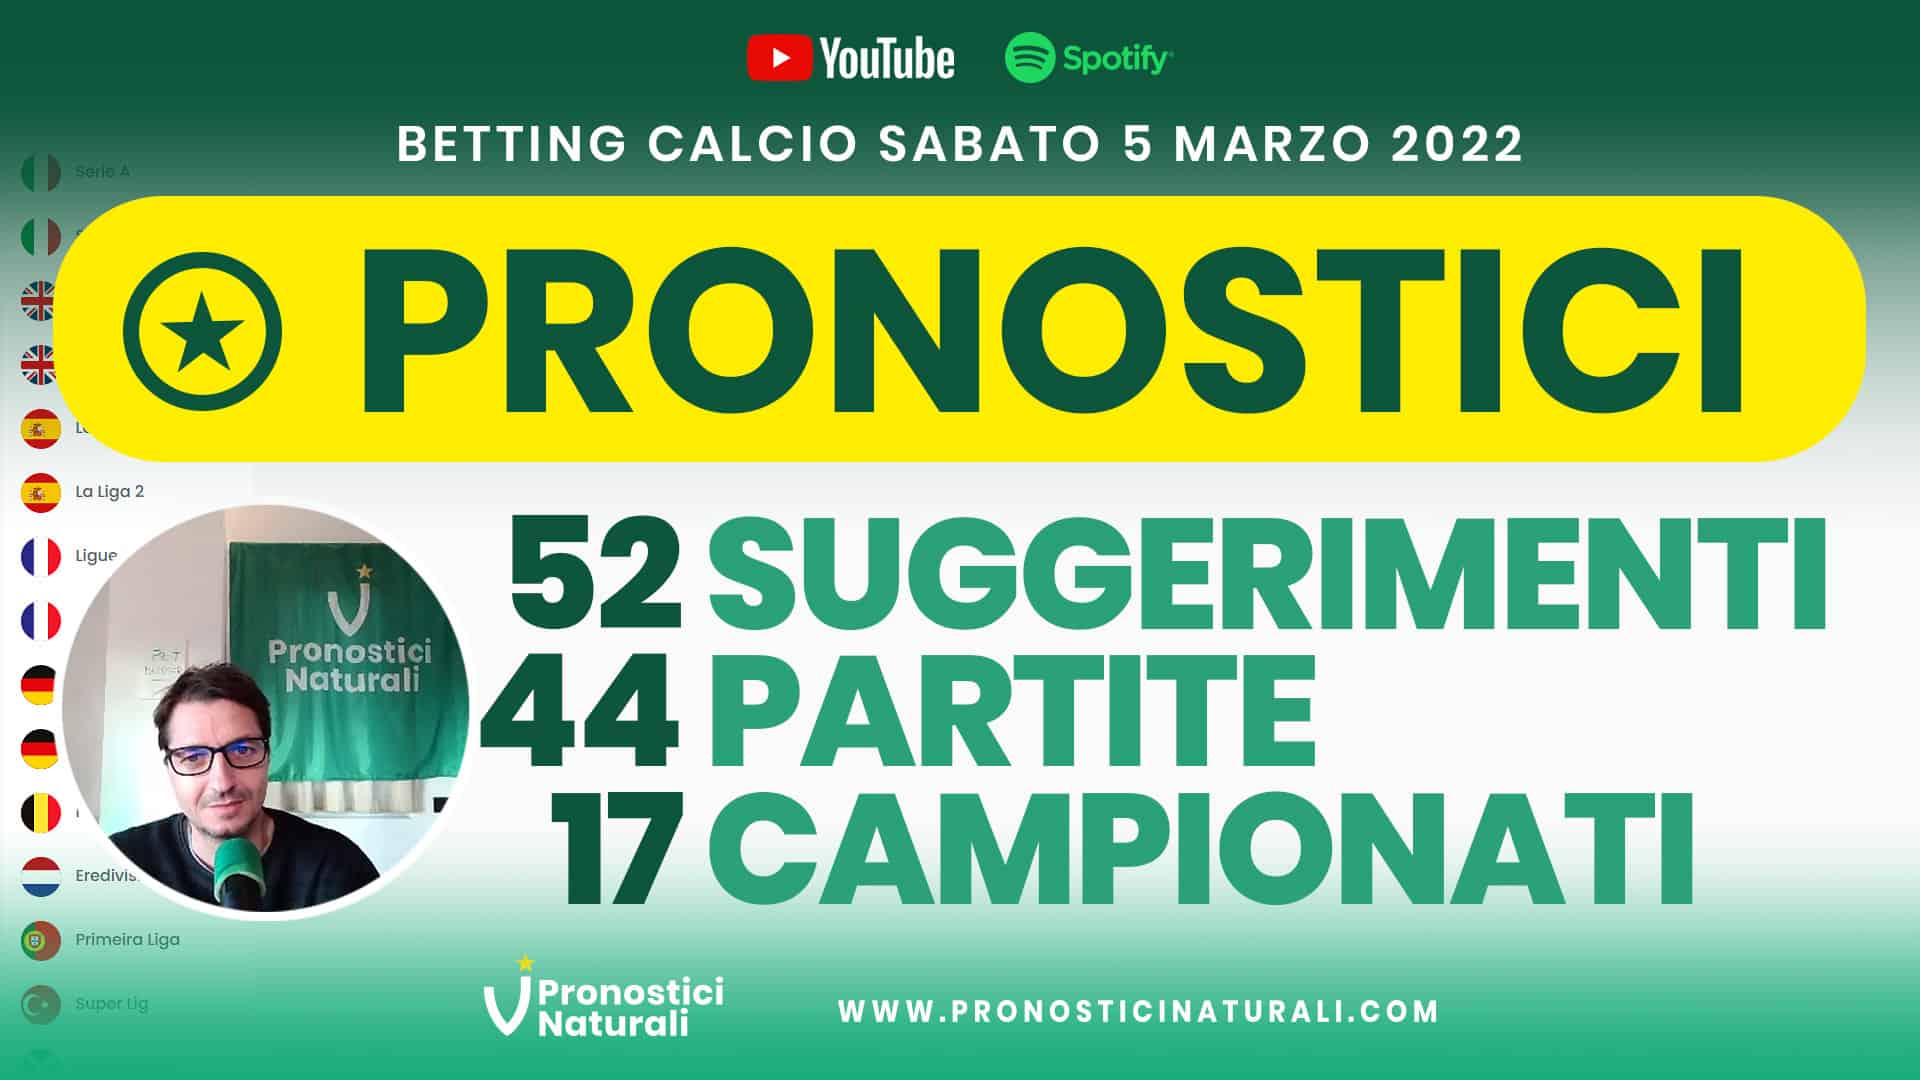 Pronostici Naturali Video Analisi Scommesse Betting Calcio Analisi Pre Partite Sabato 4 Marzo 2022